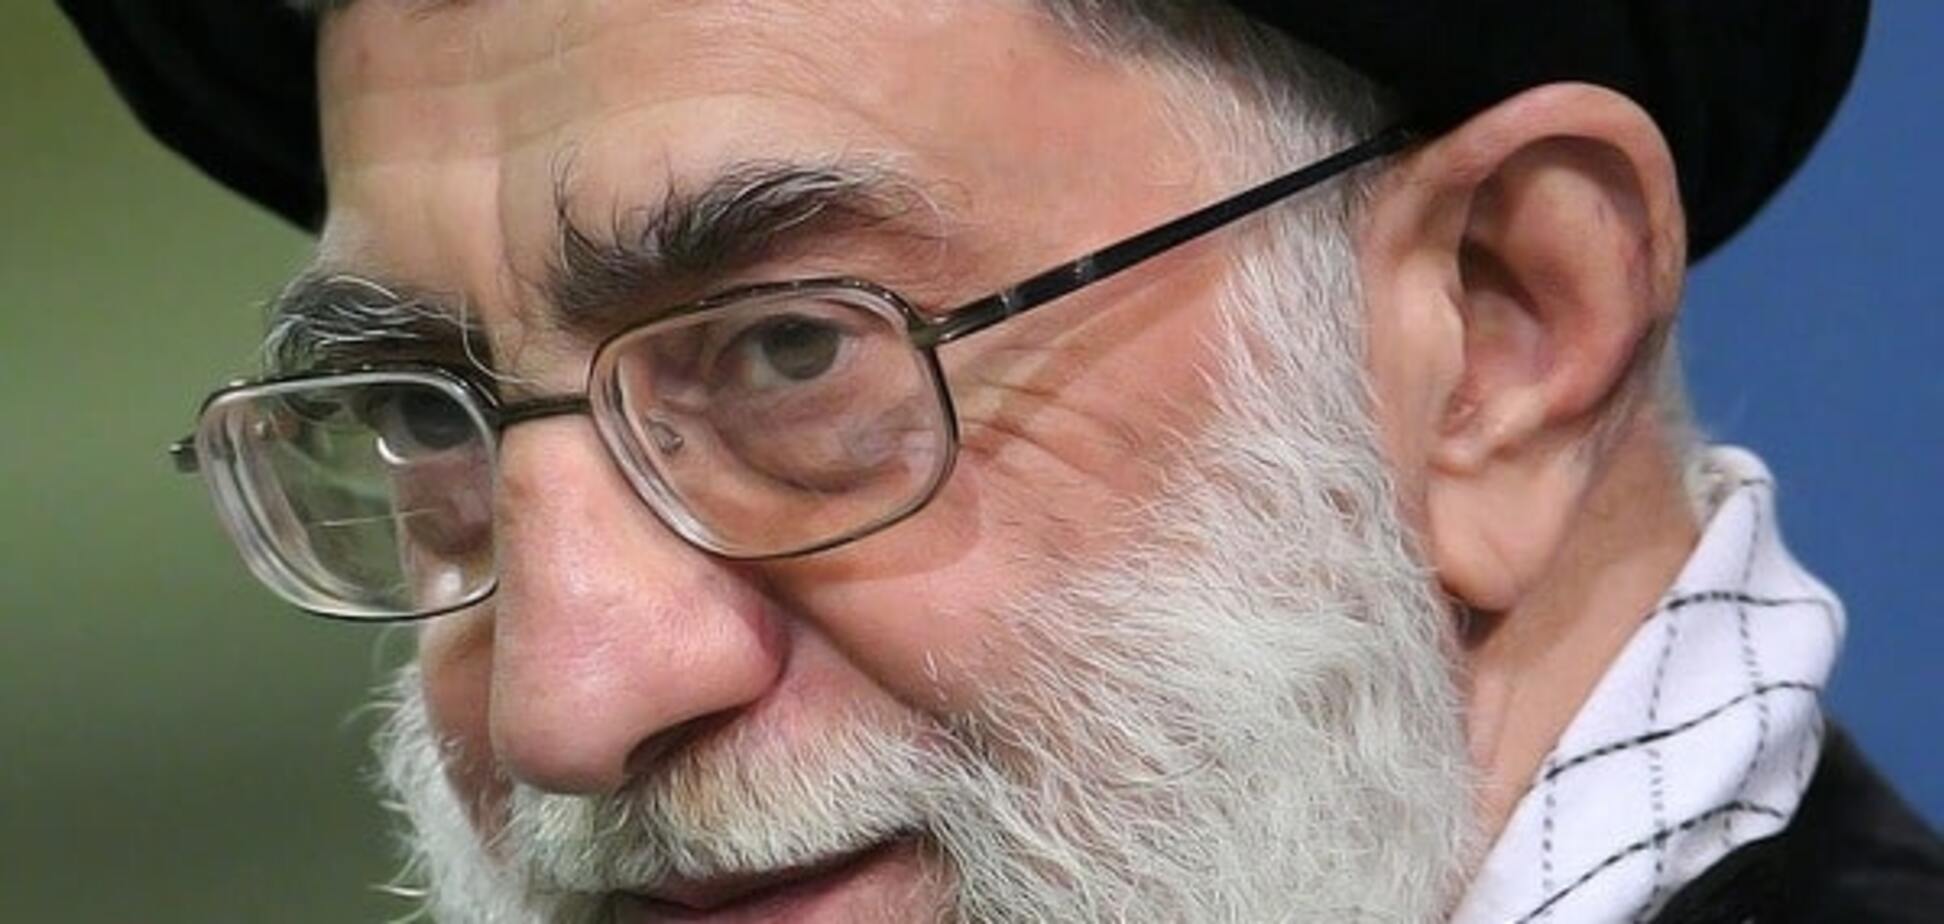 Лидер Ирана пообещал Саудовской Аравии священное возмездие